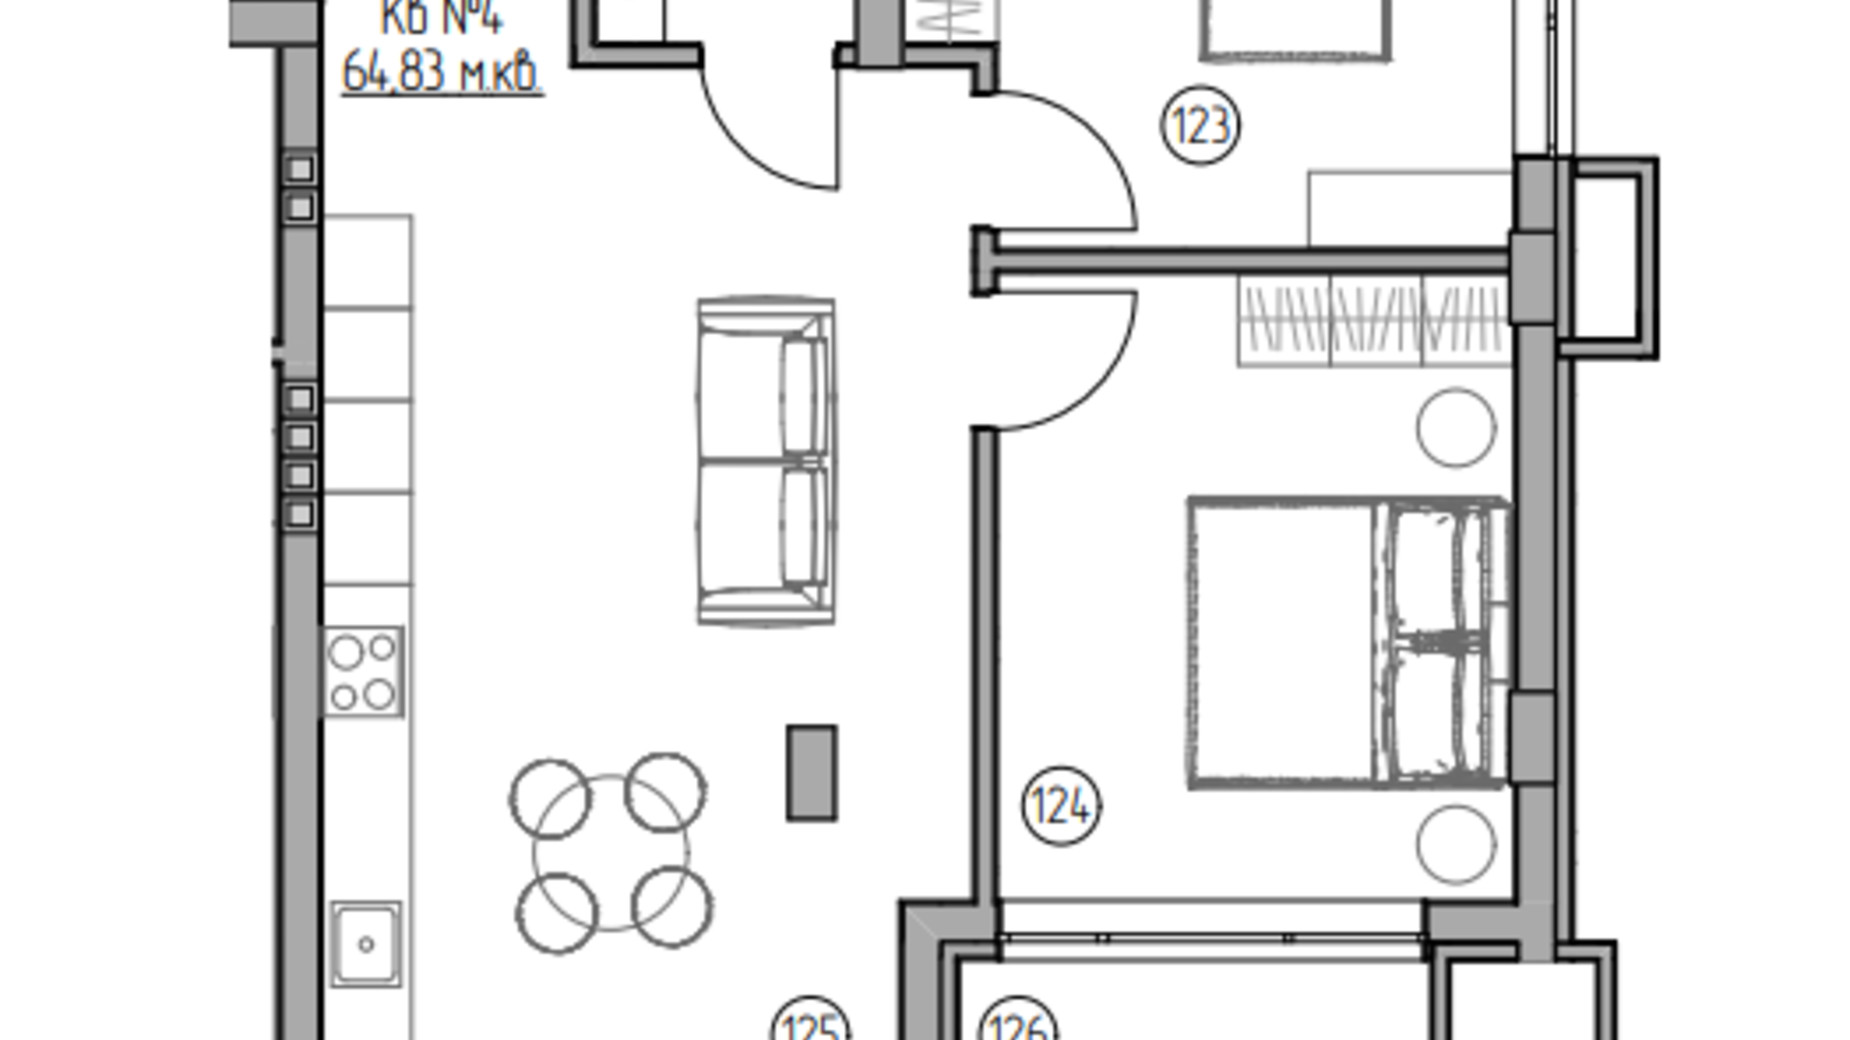 Планировка 2-комнатной квартиры в ЖК Panorama 64.83 м², фото 696466